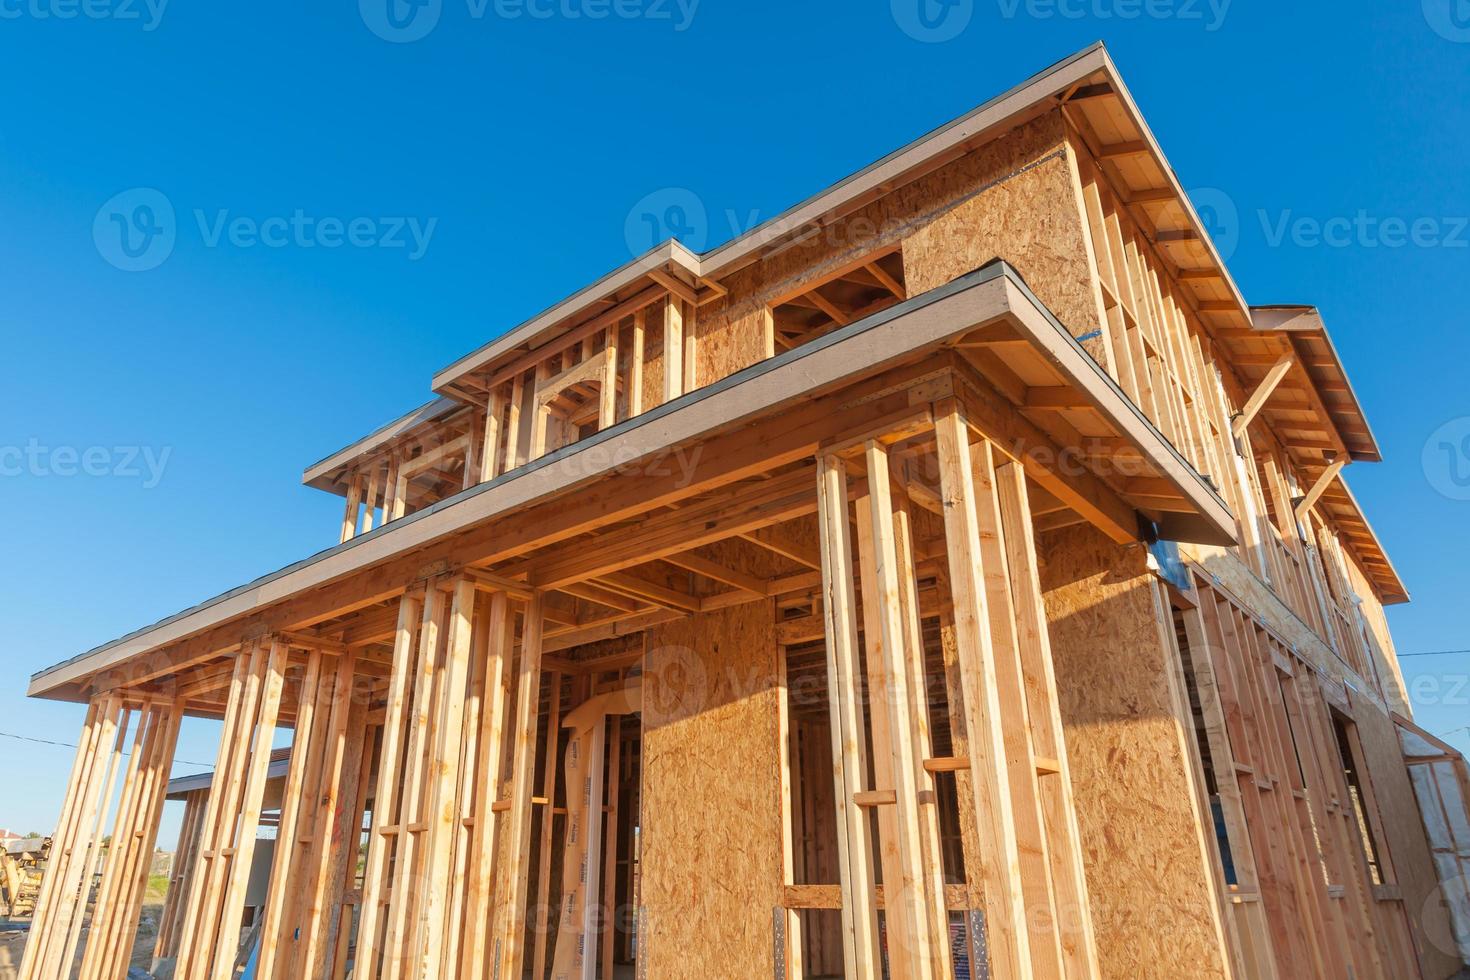 nuovo legna Casa inquadratura a costruzione luogo foto